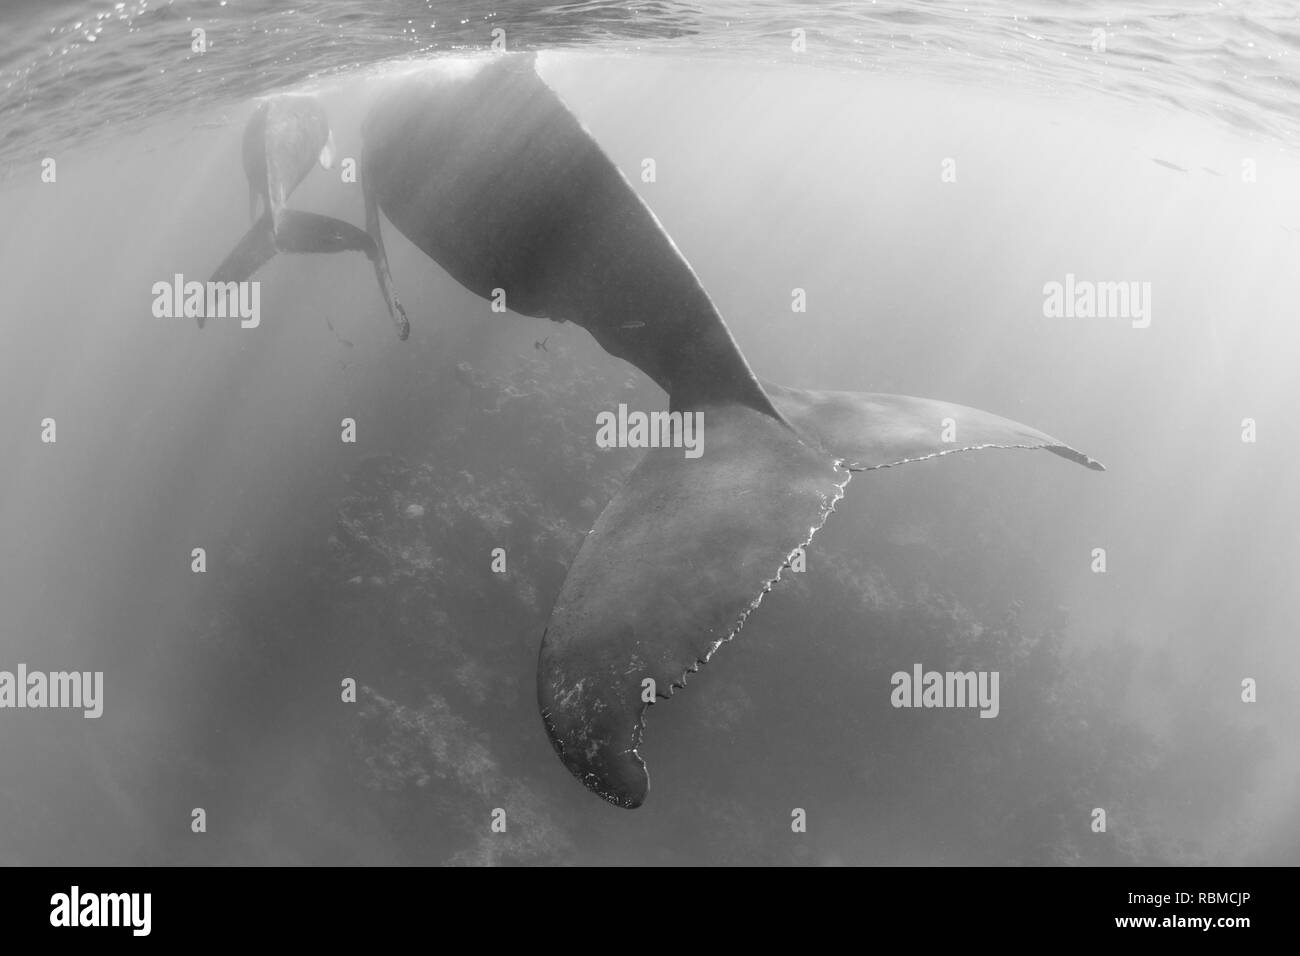 Eine herrliche, Buckelwale, Megaptera novaeangliae, schwimmt in das klare, blaue Wasser der Karibik. Stockfoto